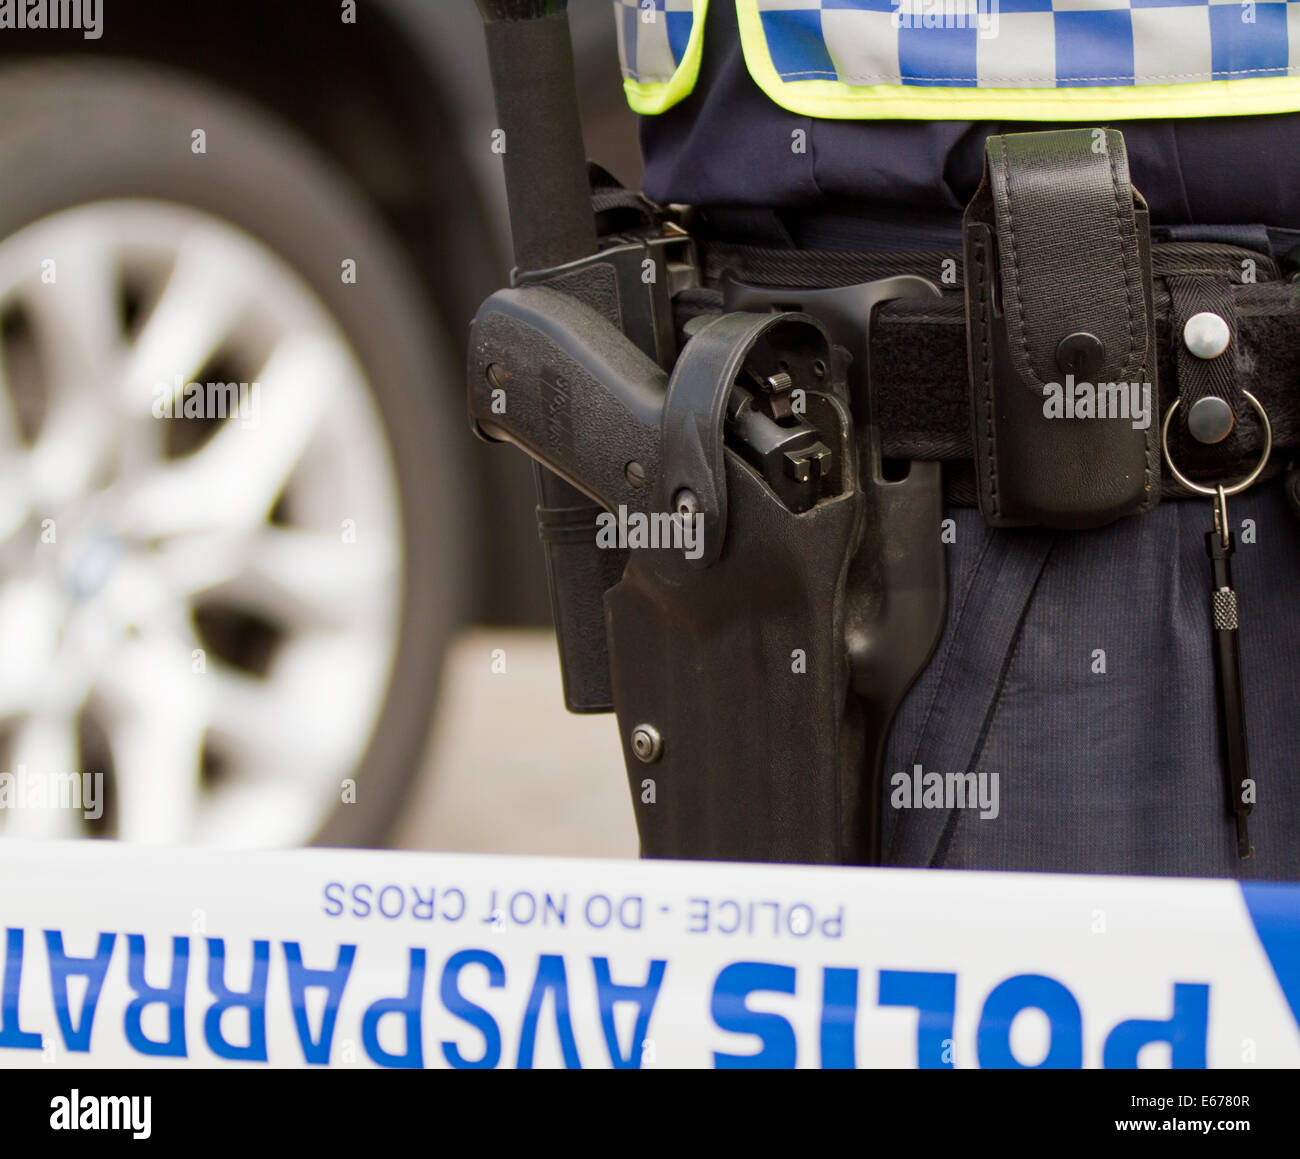 Waffe in einem Pistole Gürtel eines schwedischen Polizisten stehen hinter der Linie, die öffentlichen Eingang abgeriegelt hat. Stockfoto